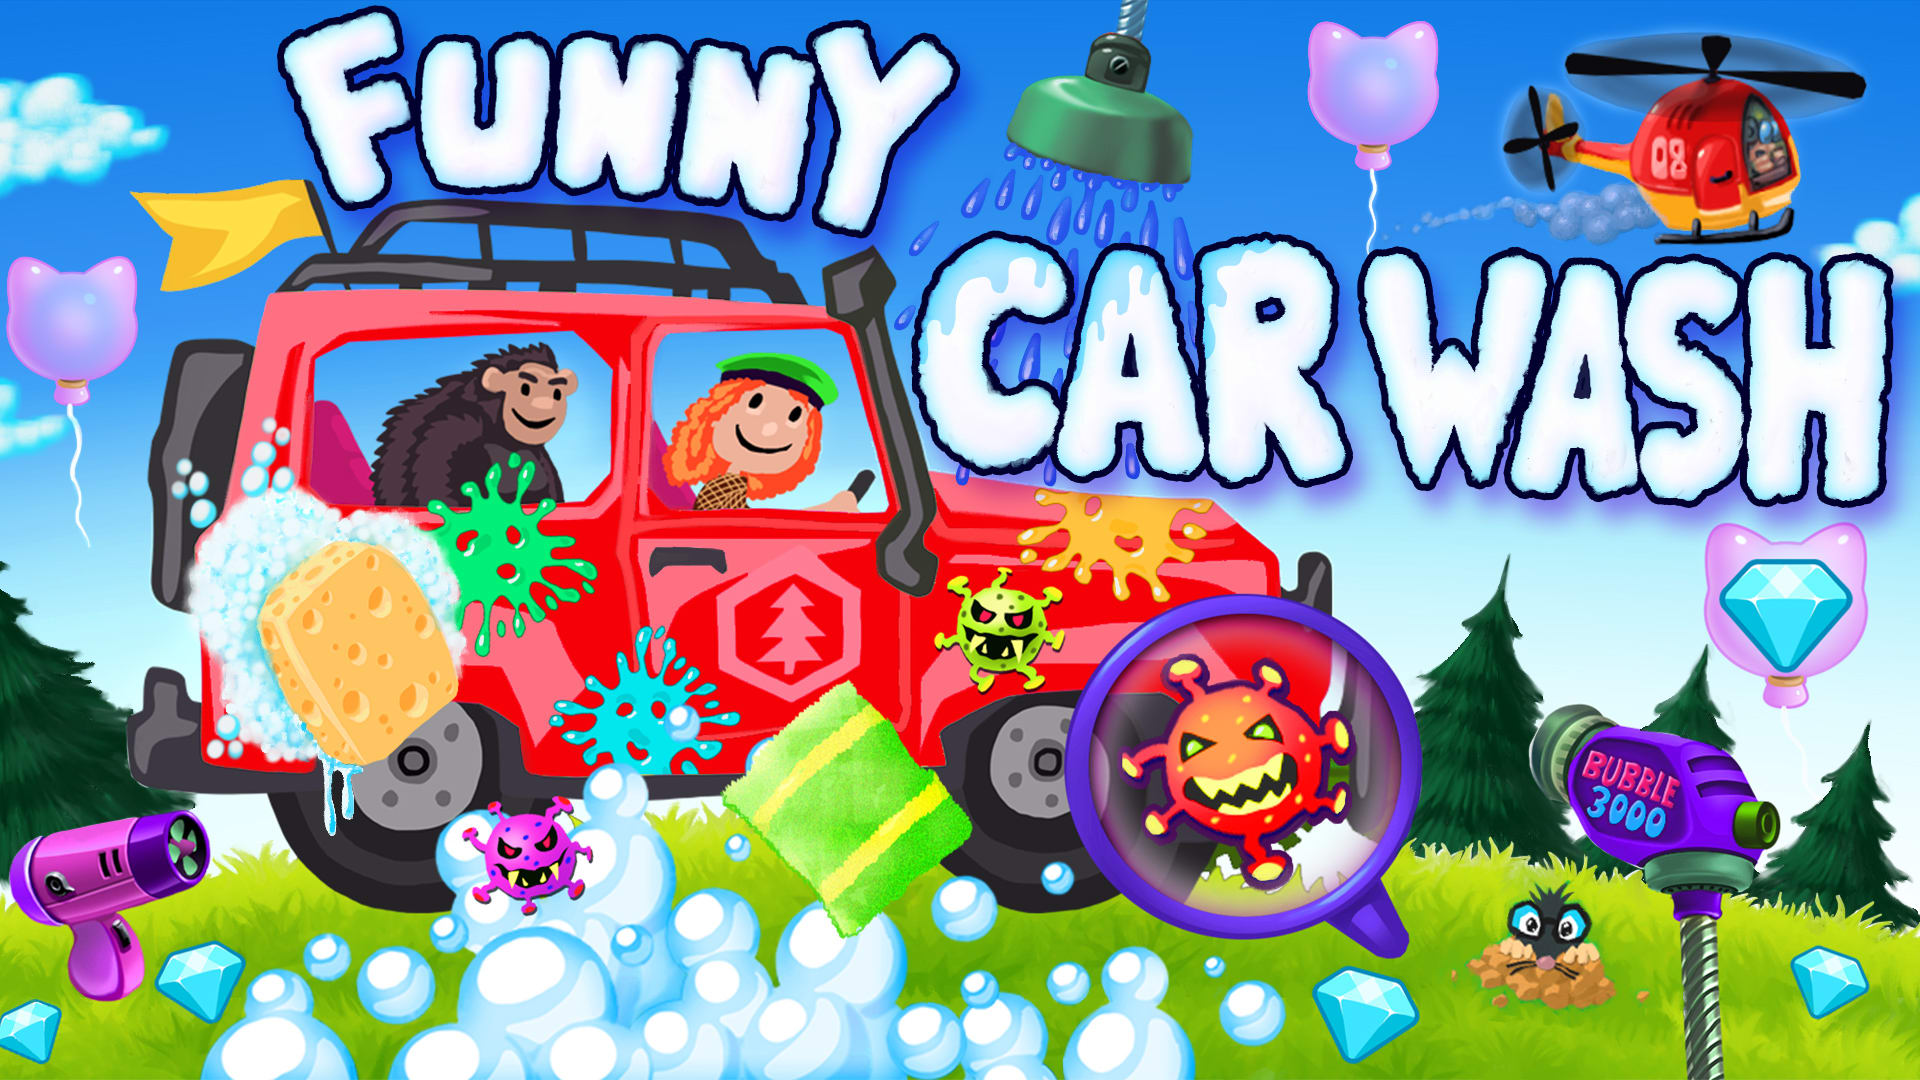 Funny Car Wash - caminhões e carros jogo ação RPG carwash garagem para crianças e bebês